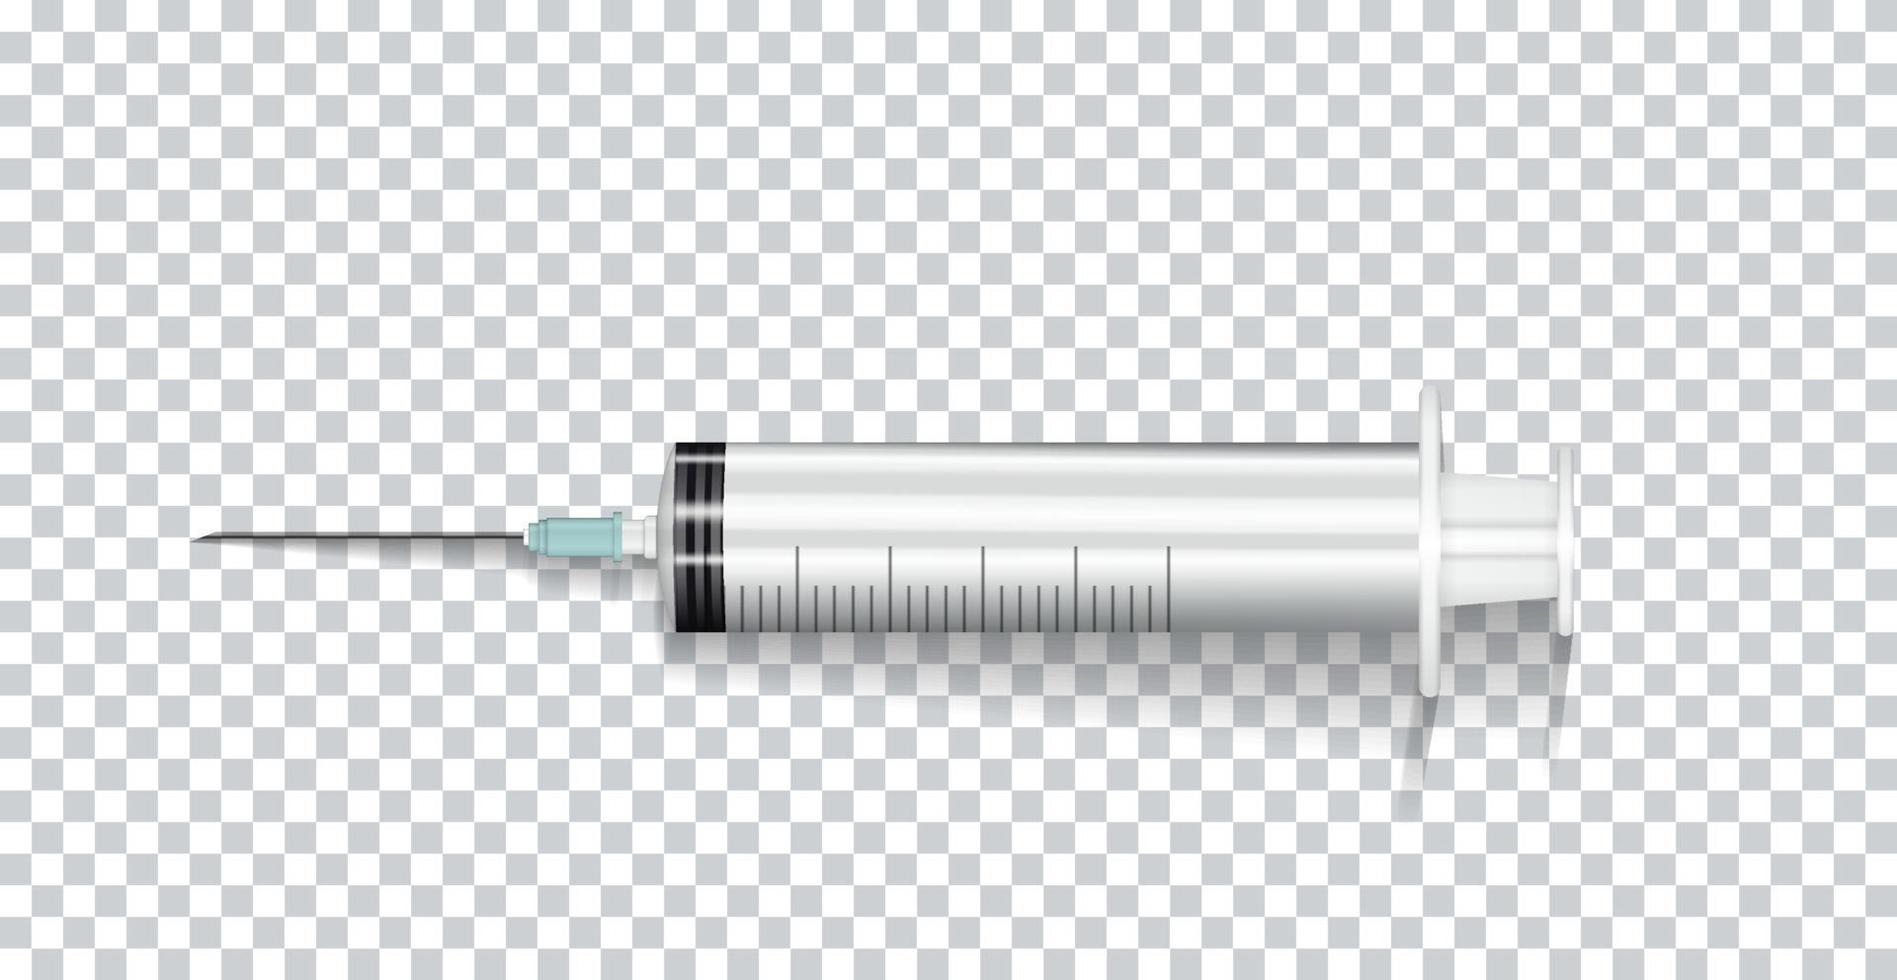 seringa naturalística com agulha para injeção, vacinas, medicamentos. ilustração vetorial vetor